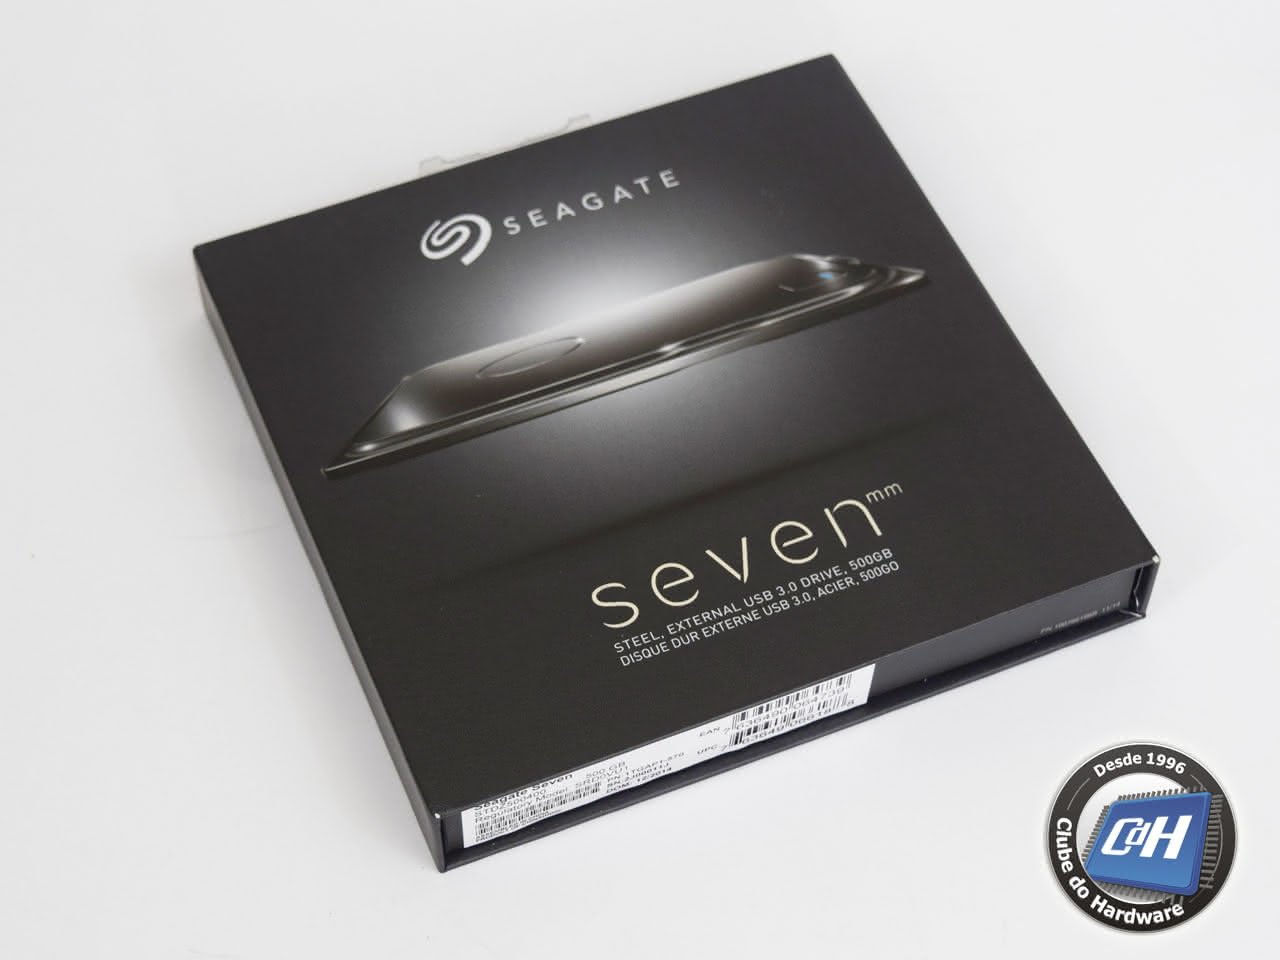 Teste do disco rígido externo portátil Seagate Seven 500 GB